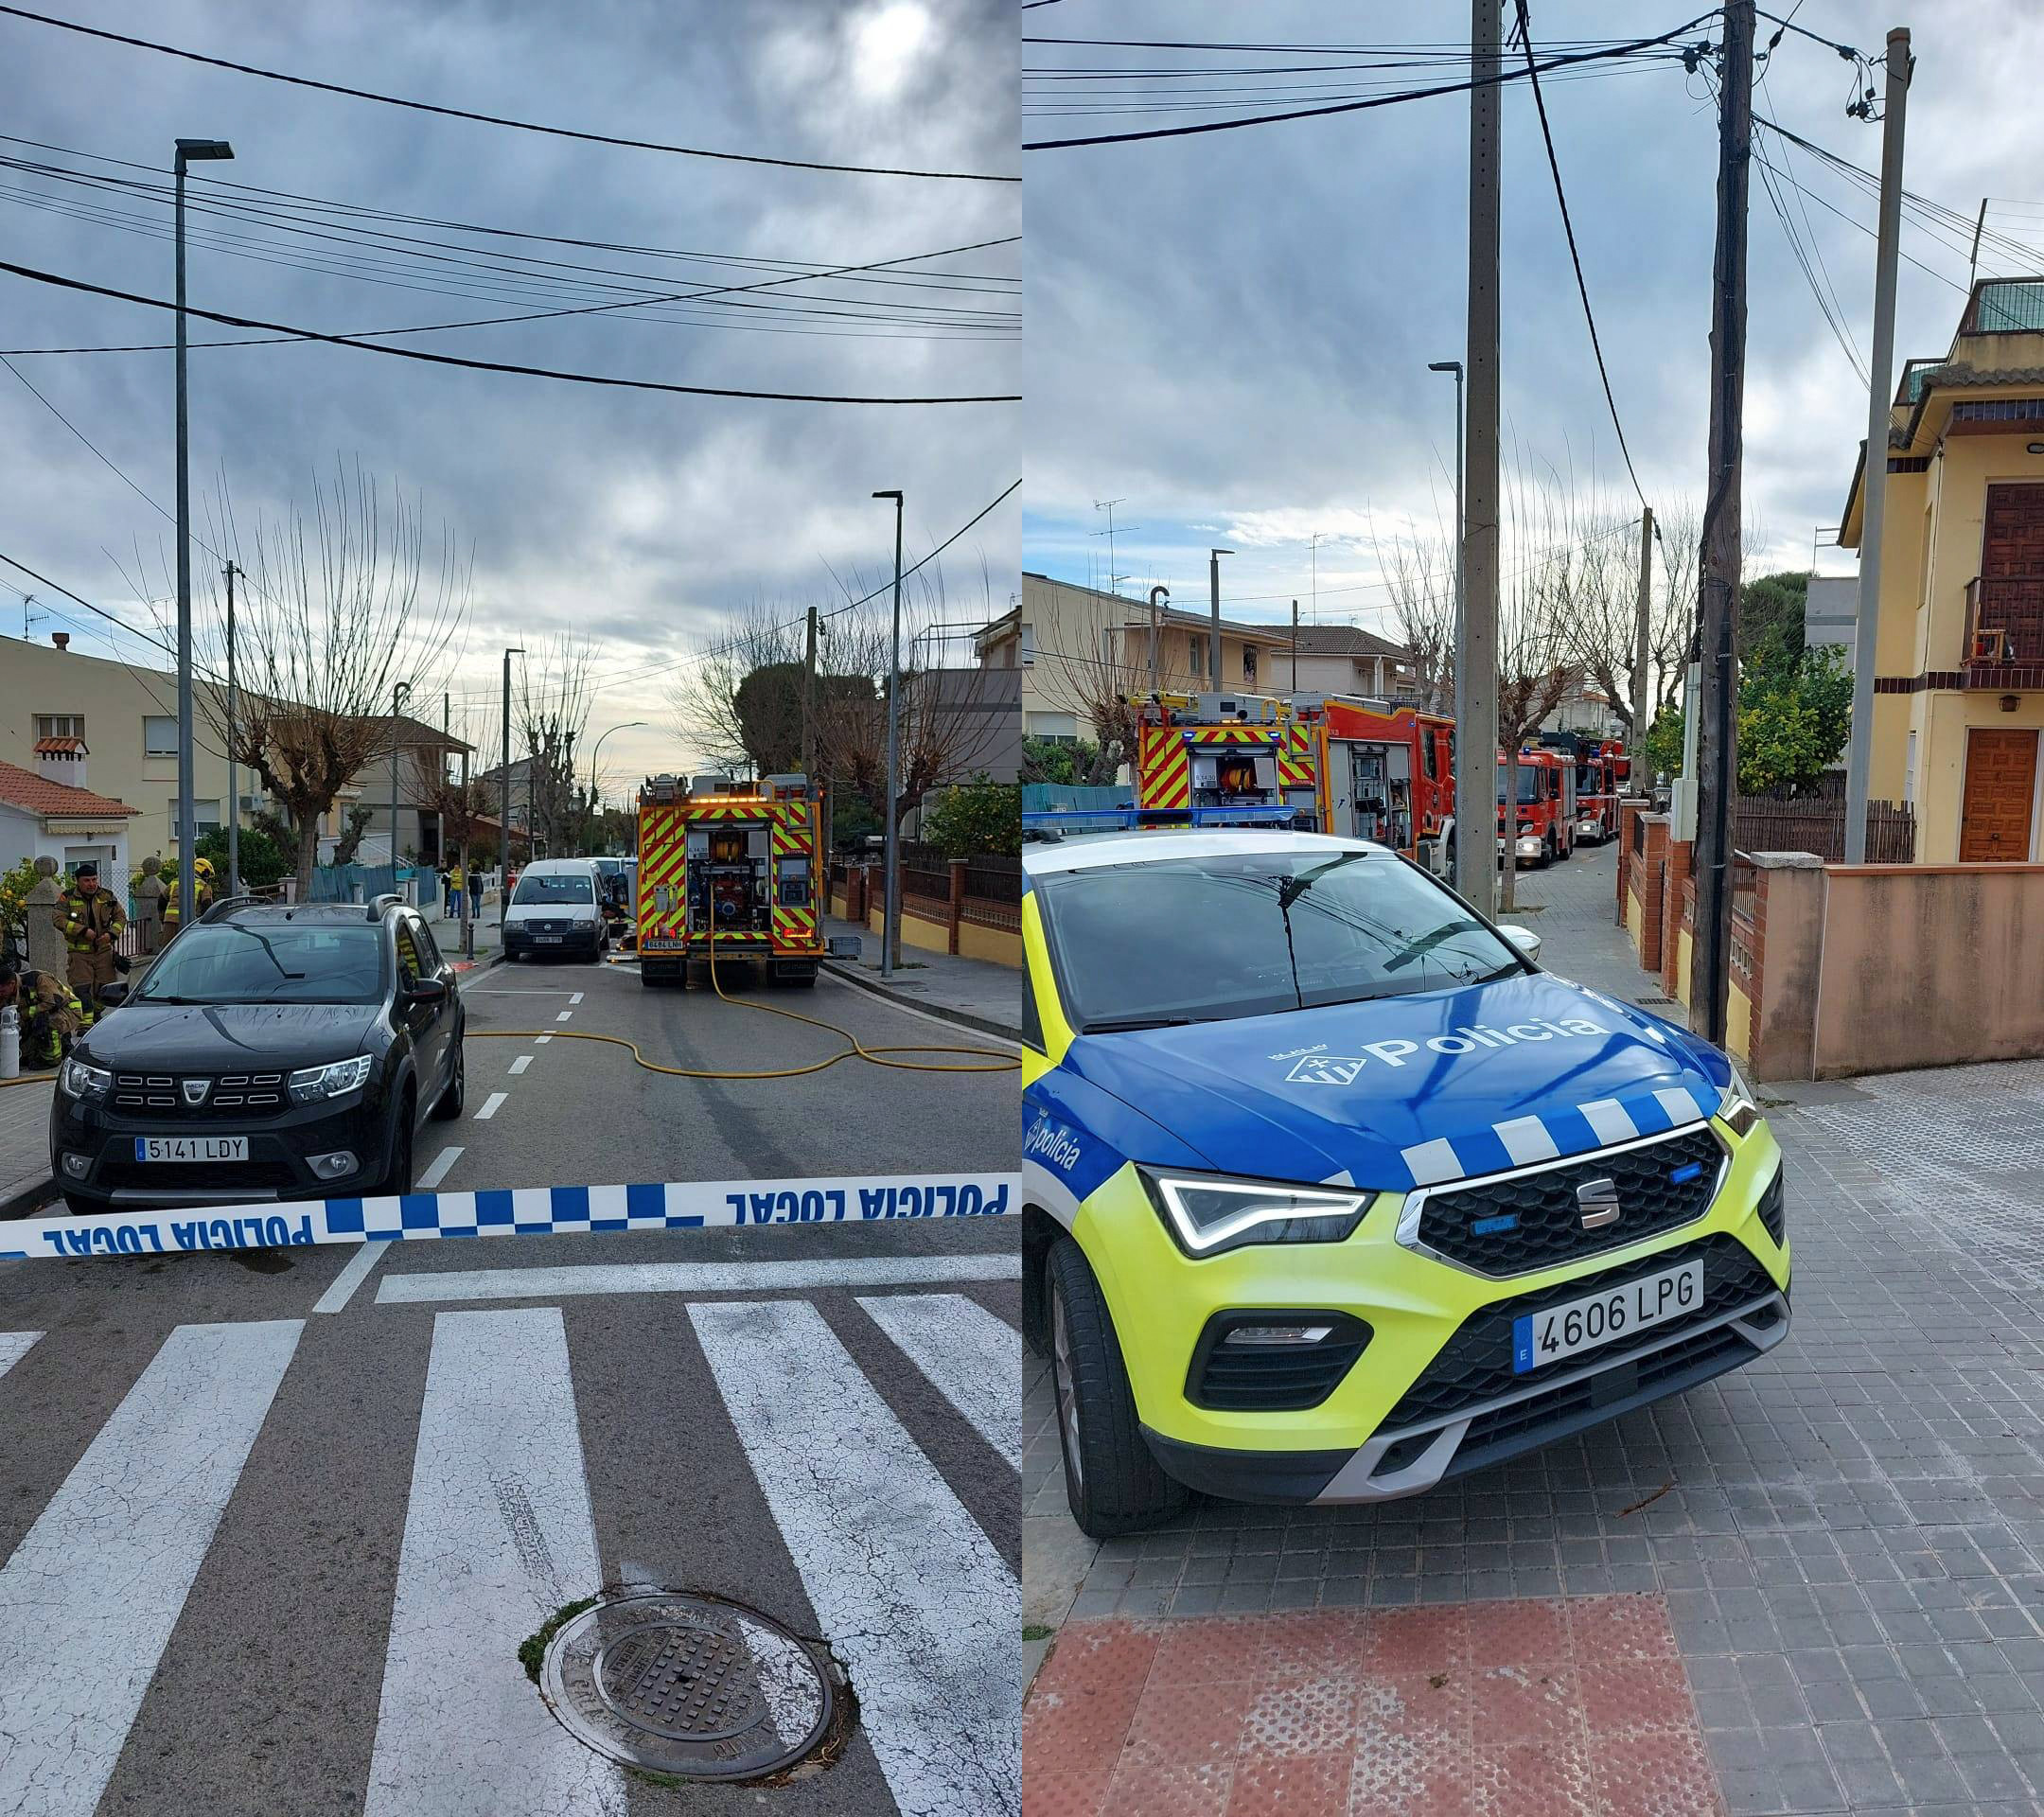 Fotografías que ha compartido el Ayuntamiento de Calafell sobre la actuación de los servicios de emergencia / AYUNTAMIENTO DE CALAFELL